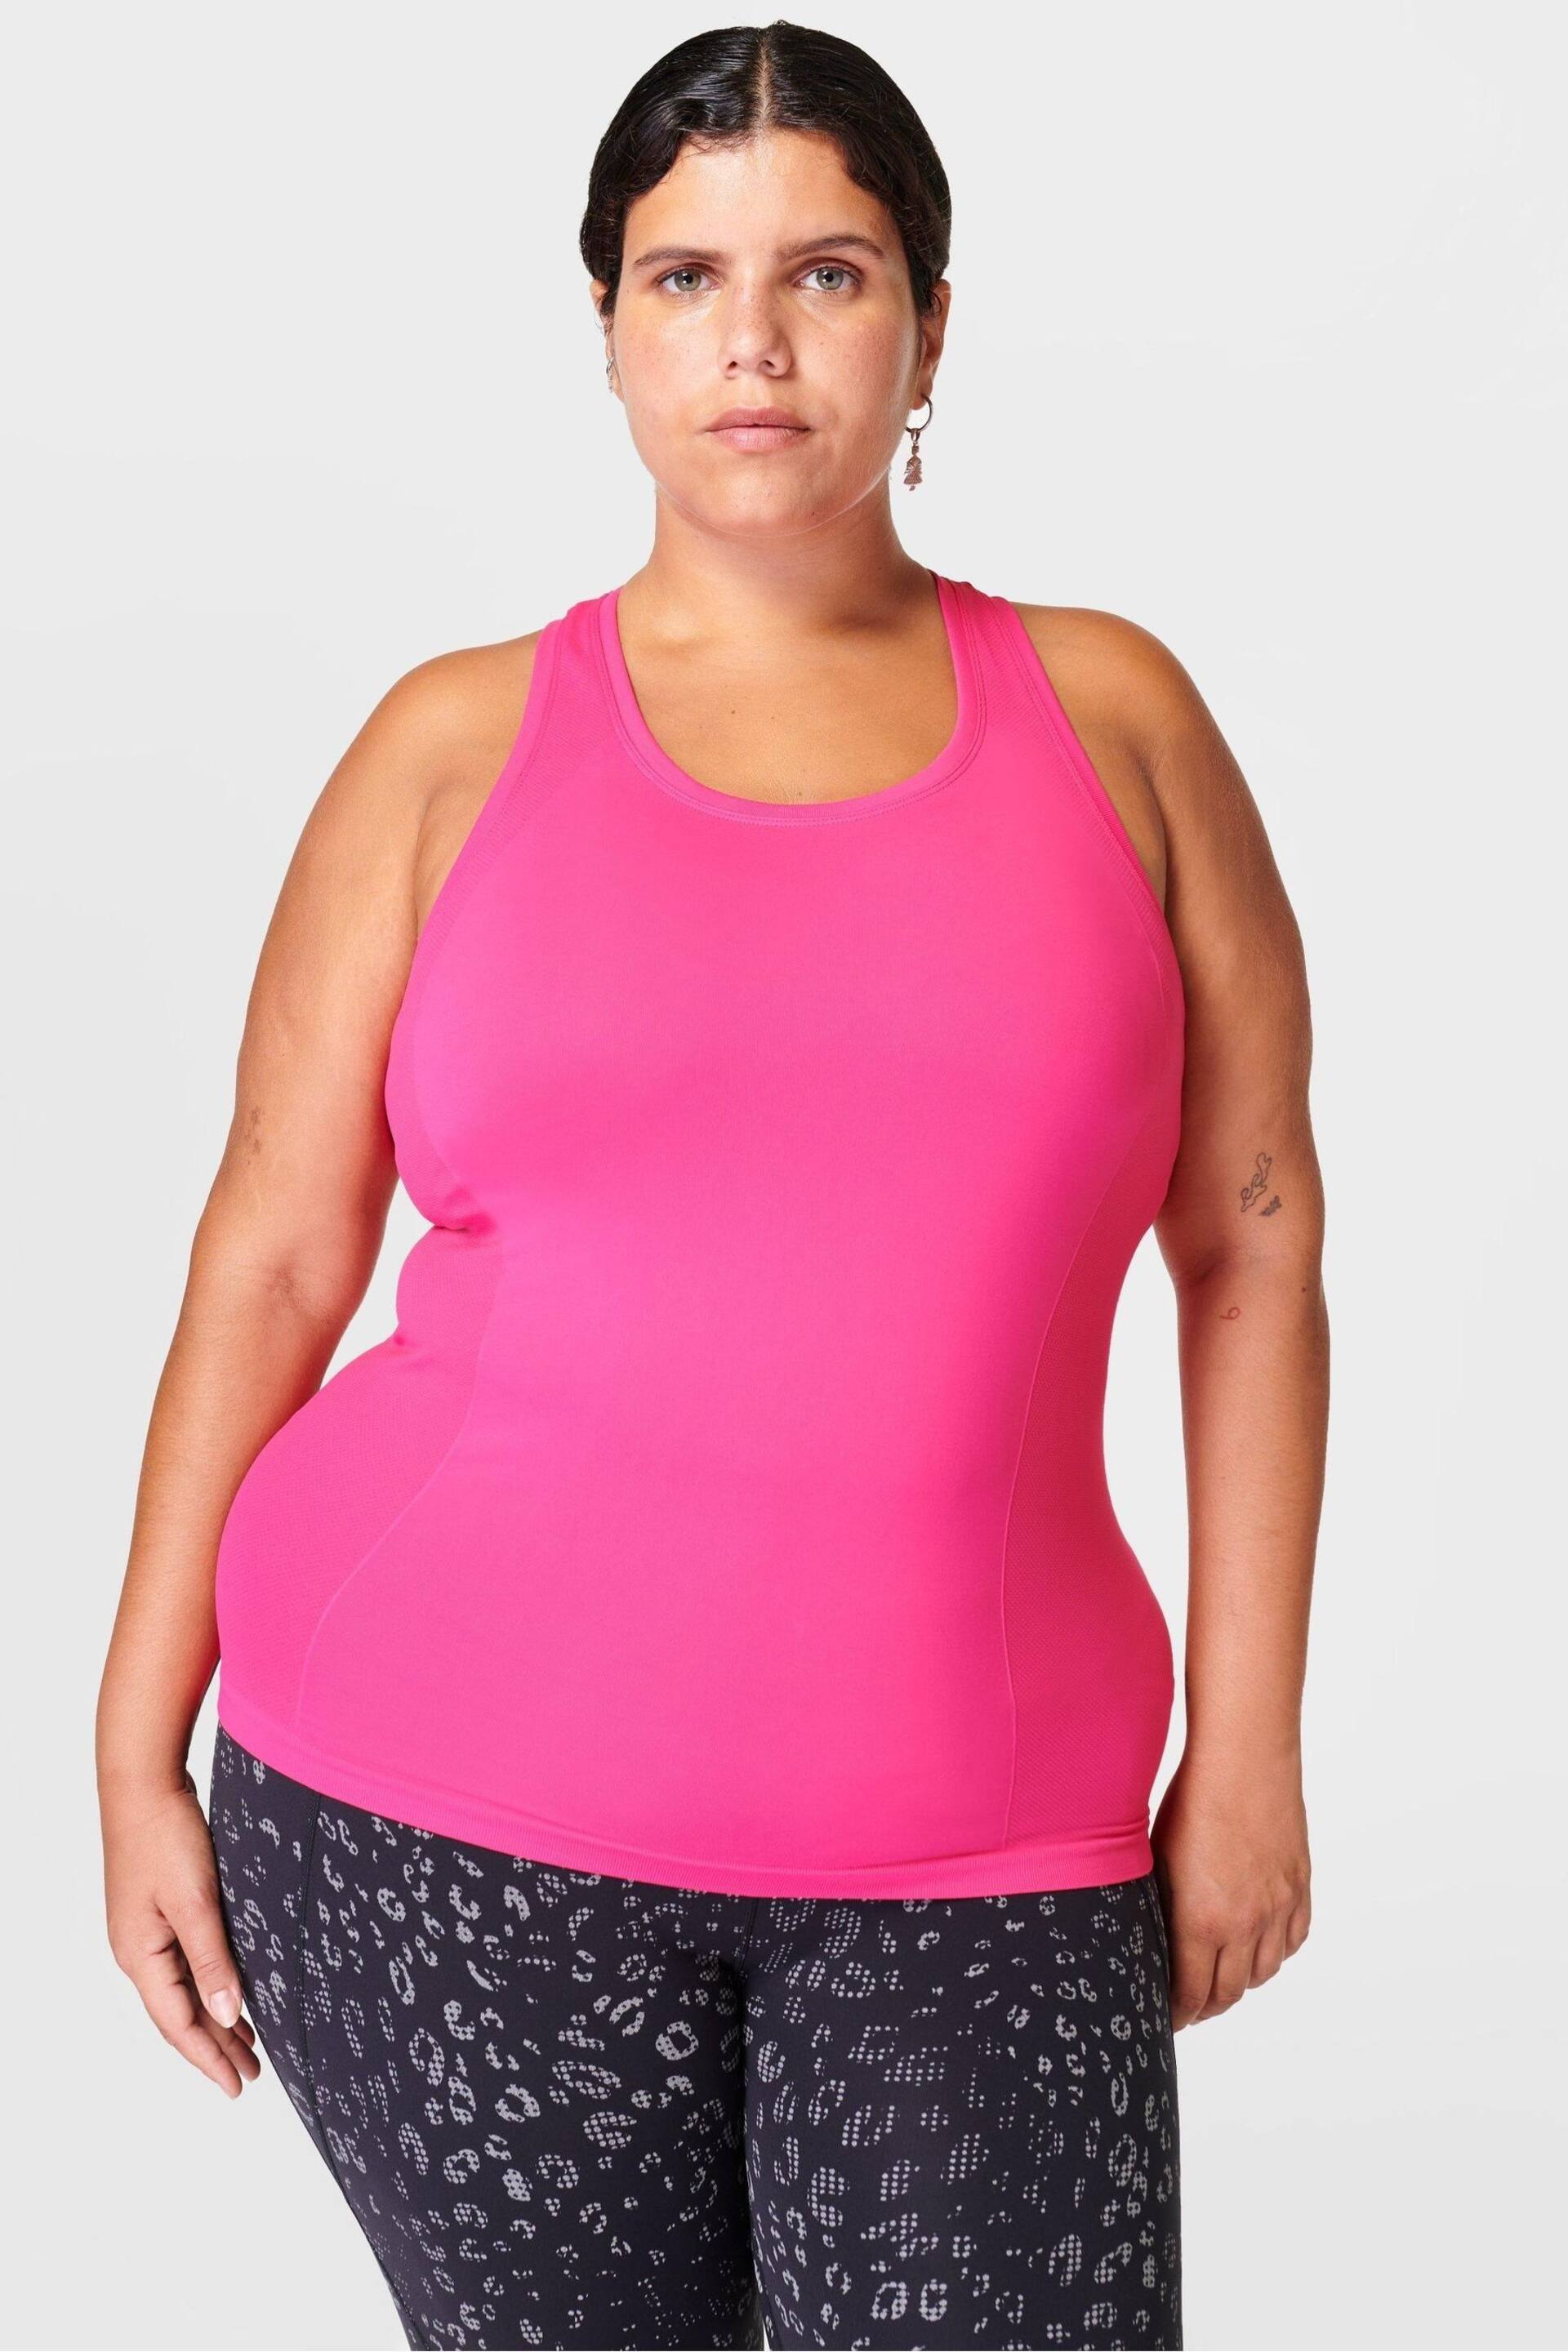 Sweaty Betty Punk Pink Athlete Seamless Workout Tank Top - Image 1 of 5